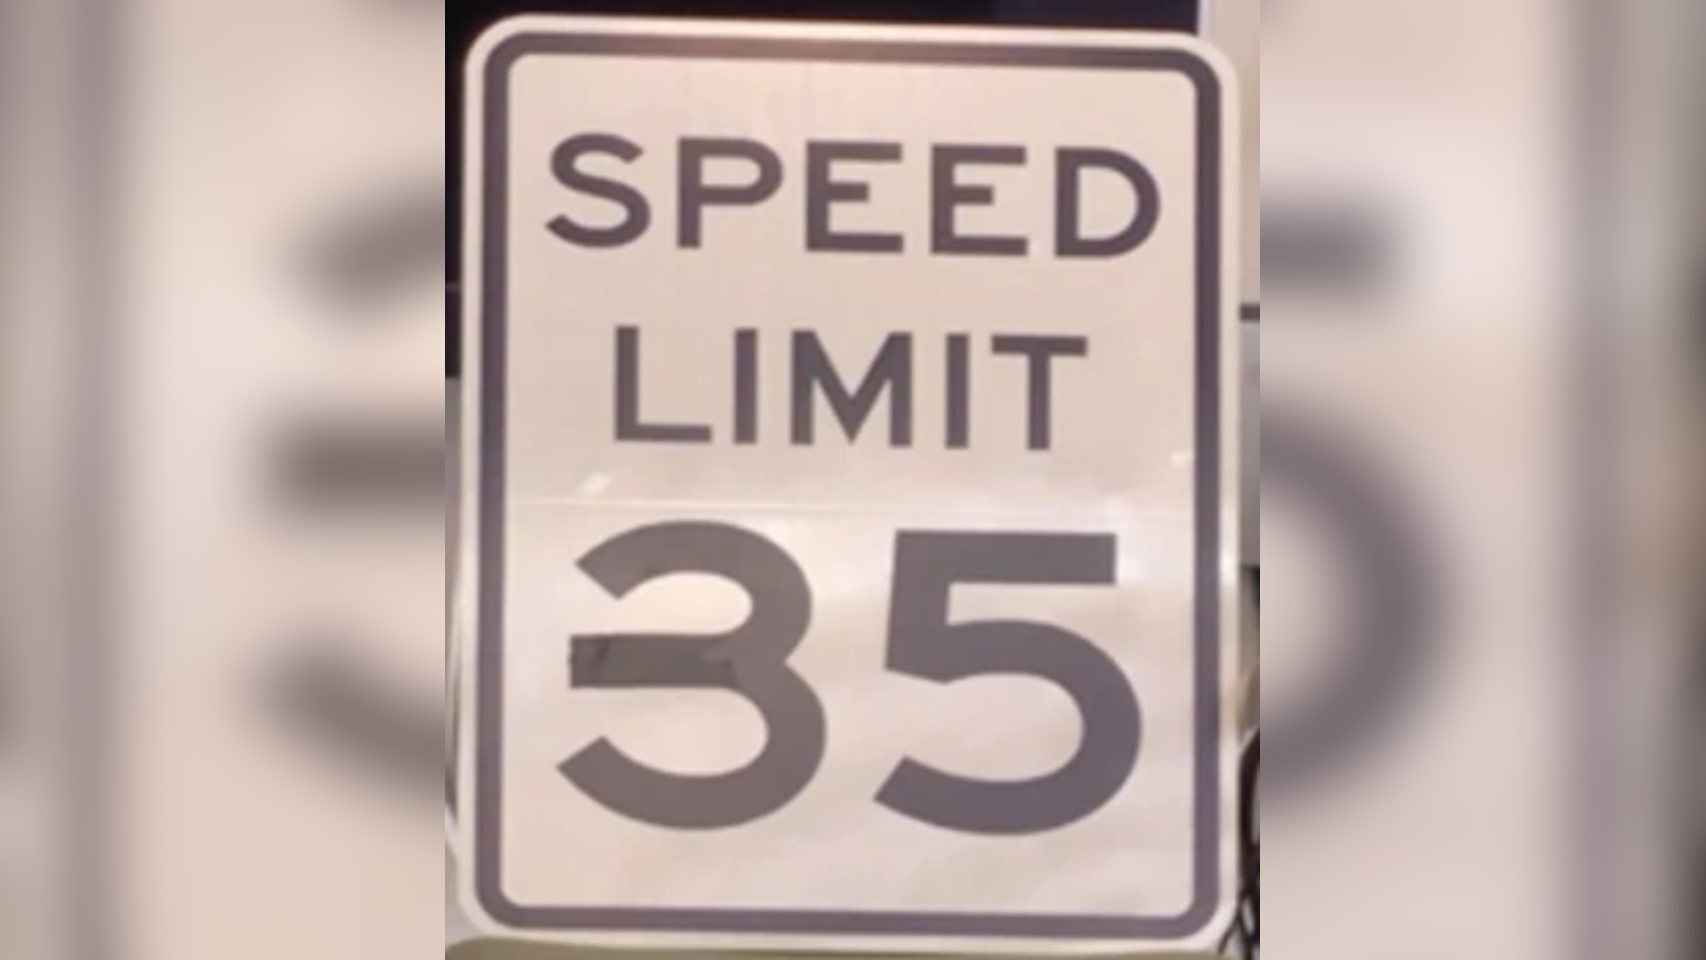 Señal de límite de velocidad modificada